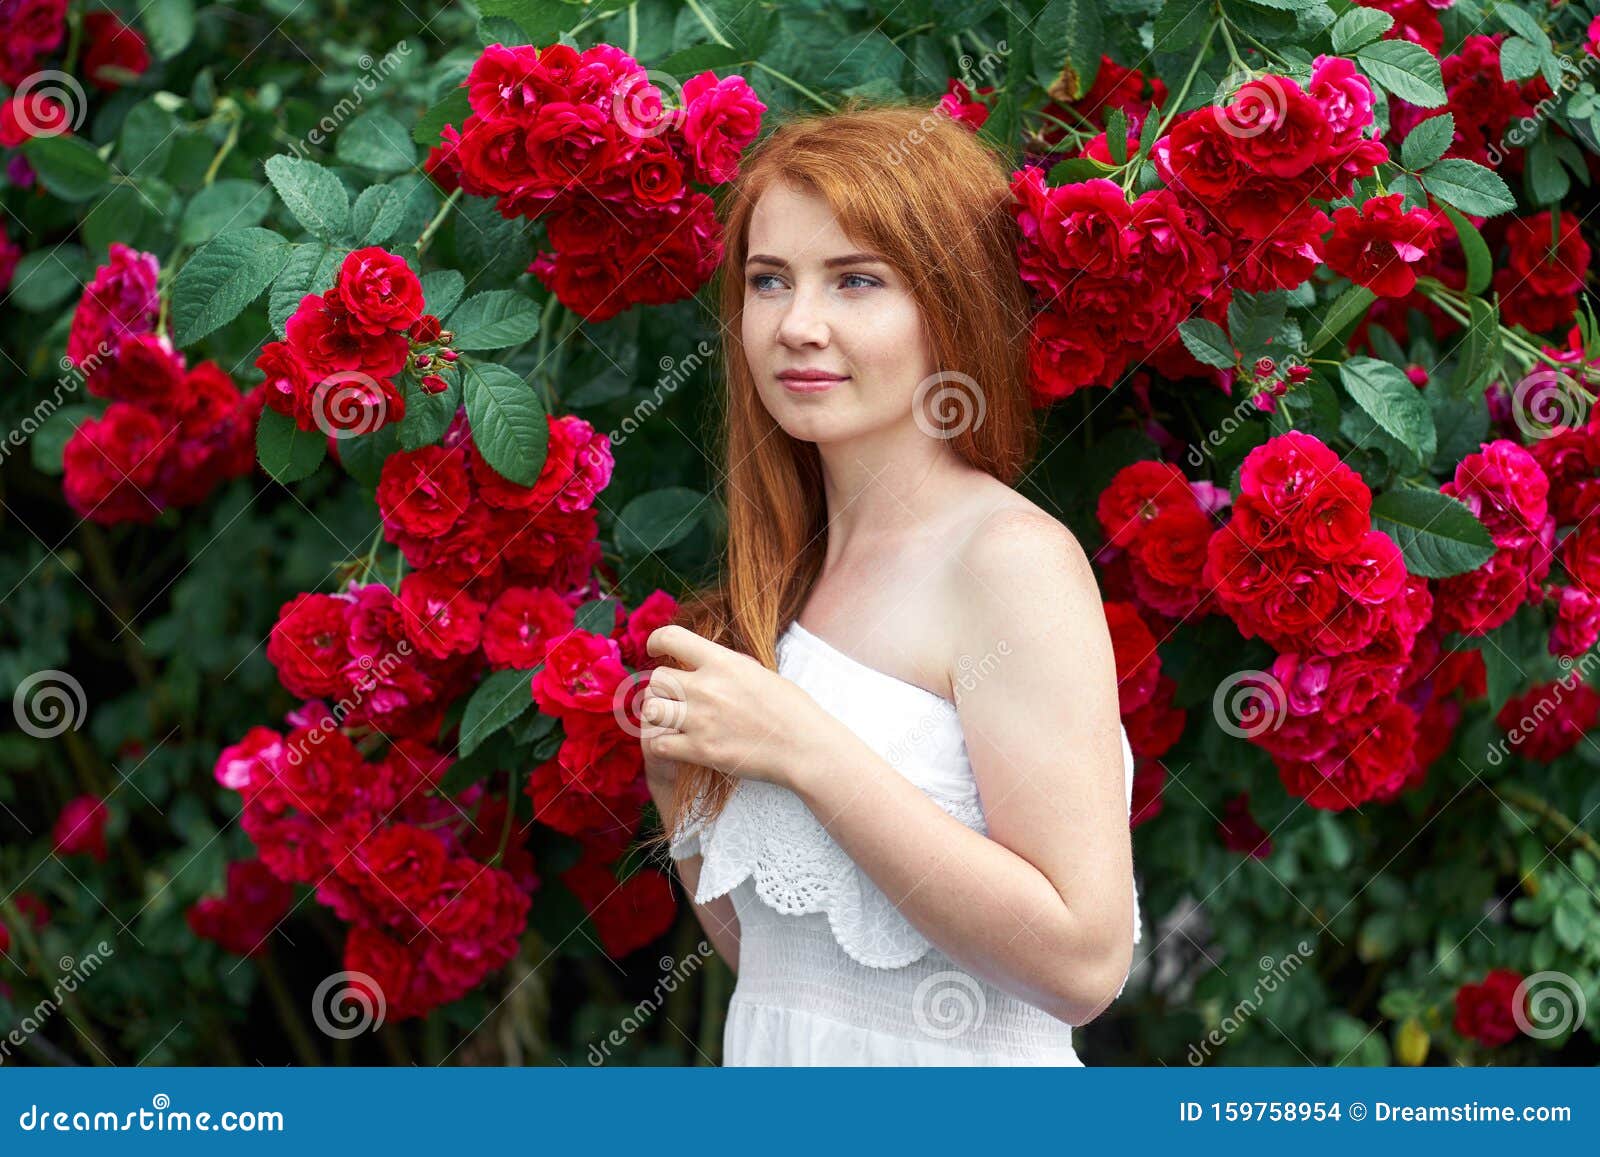 玫瑰花盛开背景中一个漂亮红发女孩的画像户外库存照片 图片包括有